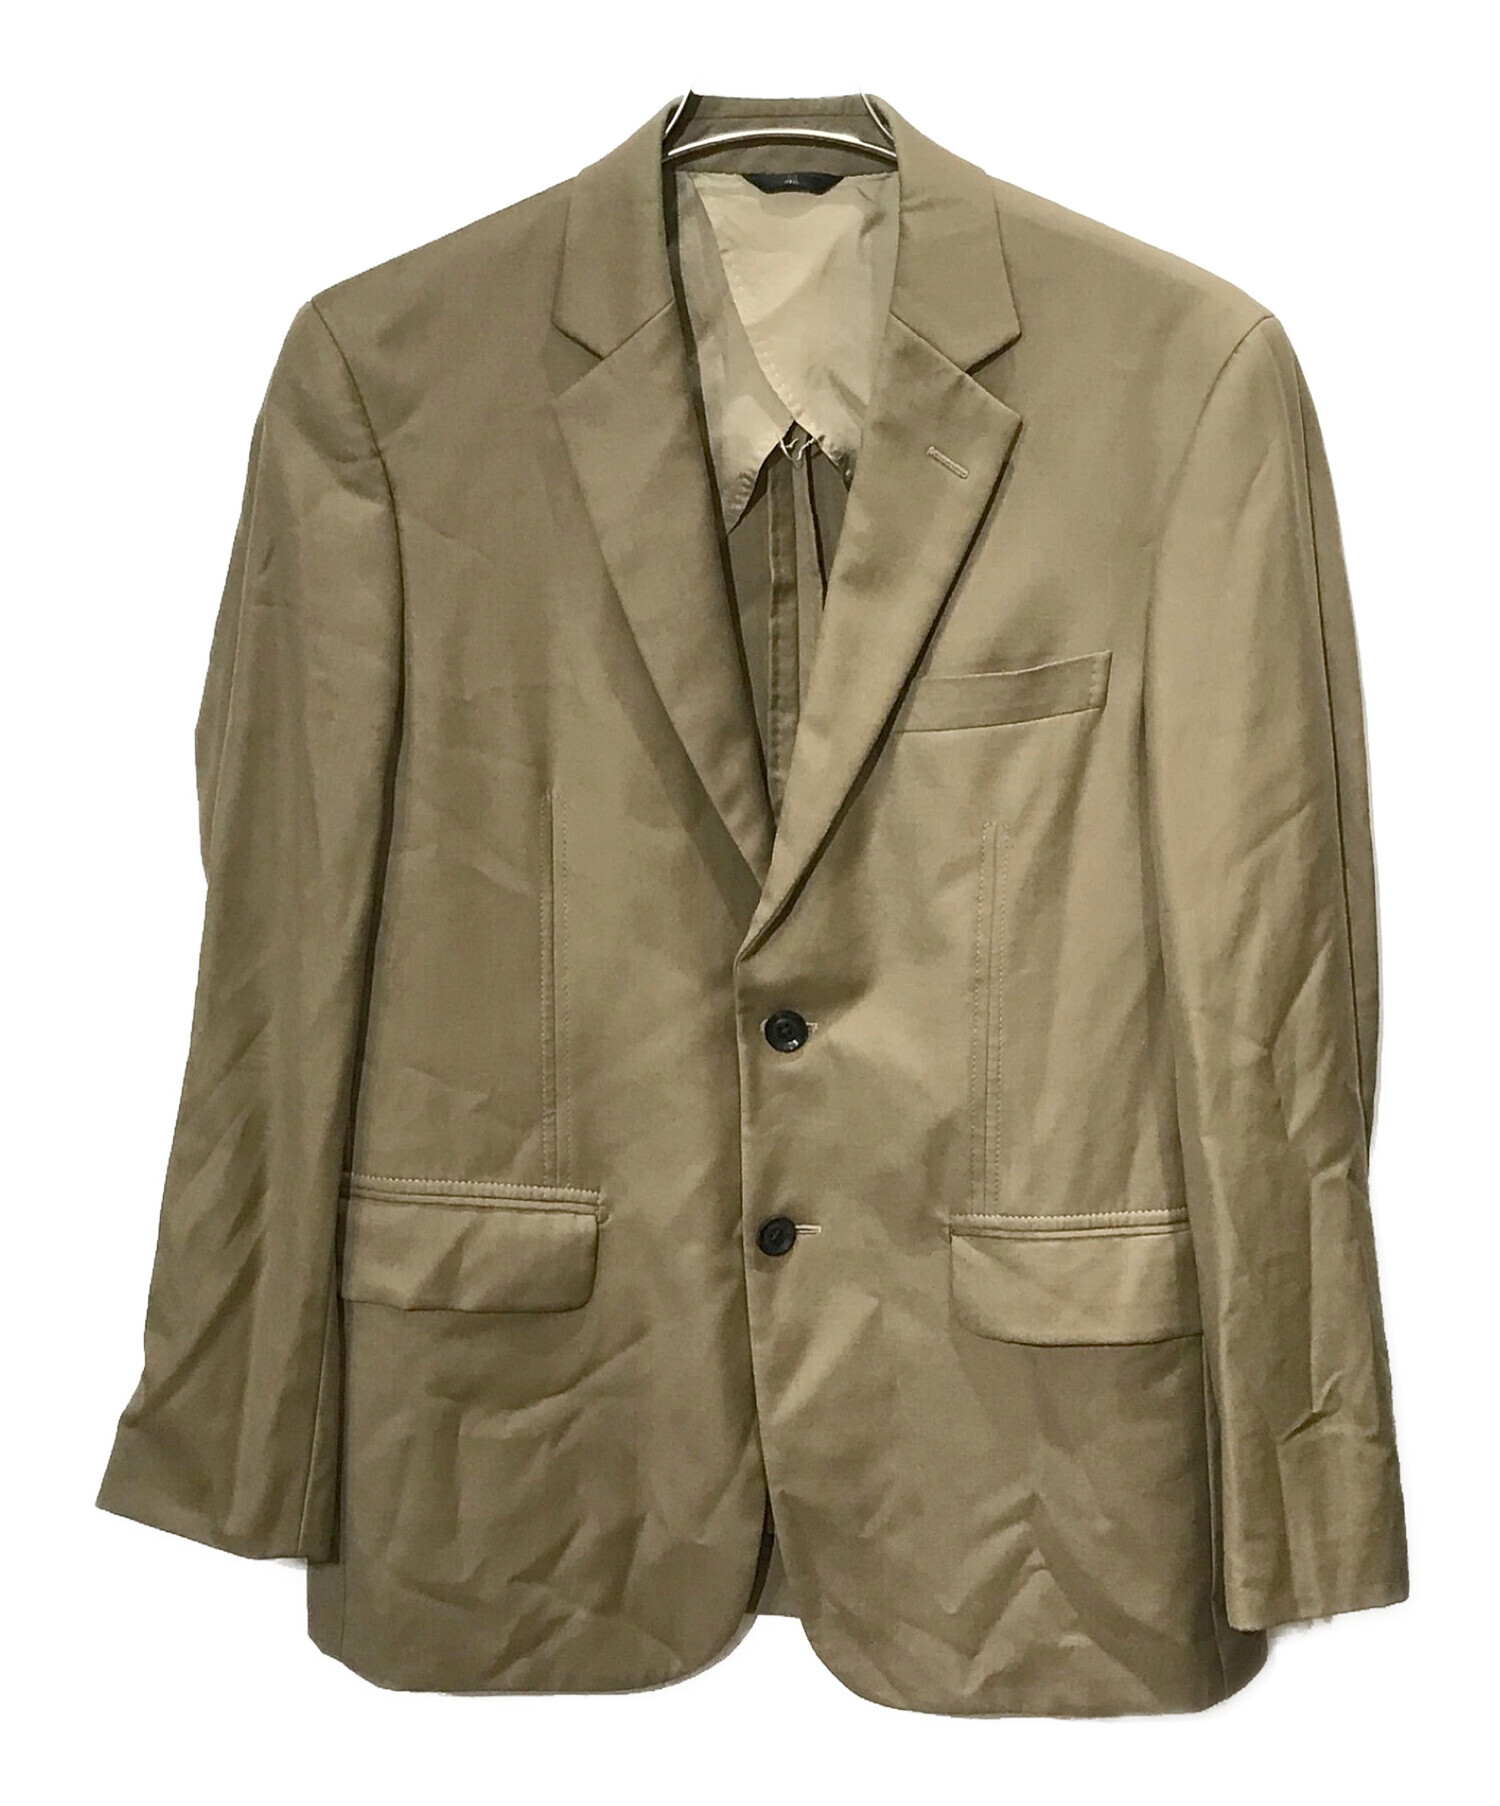 LANVIN COLLECTION スーツ セットアップ サイズ52 XL - スーツ